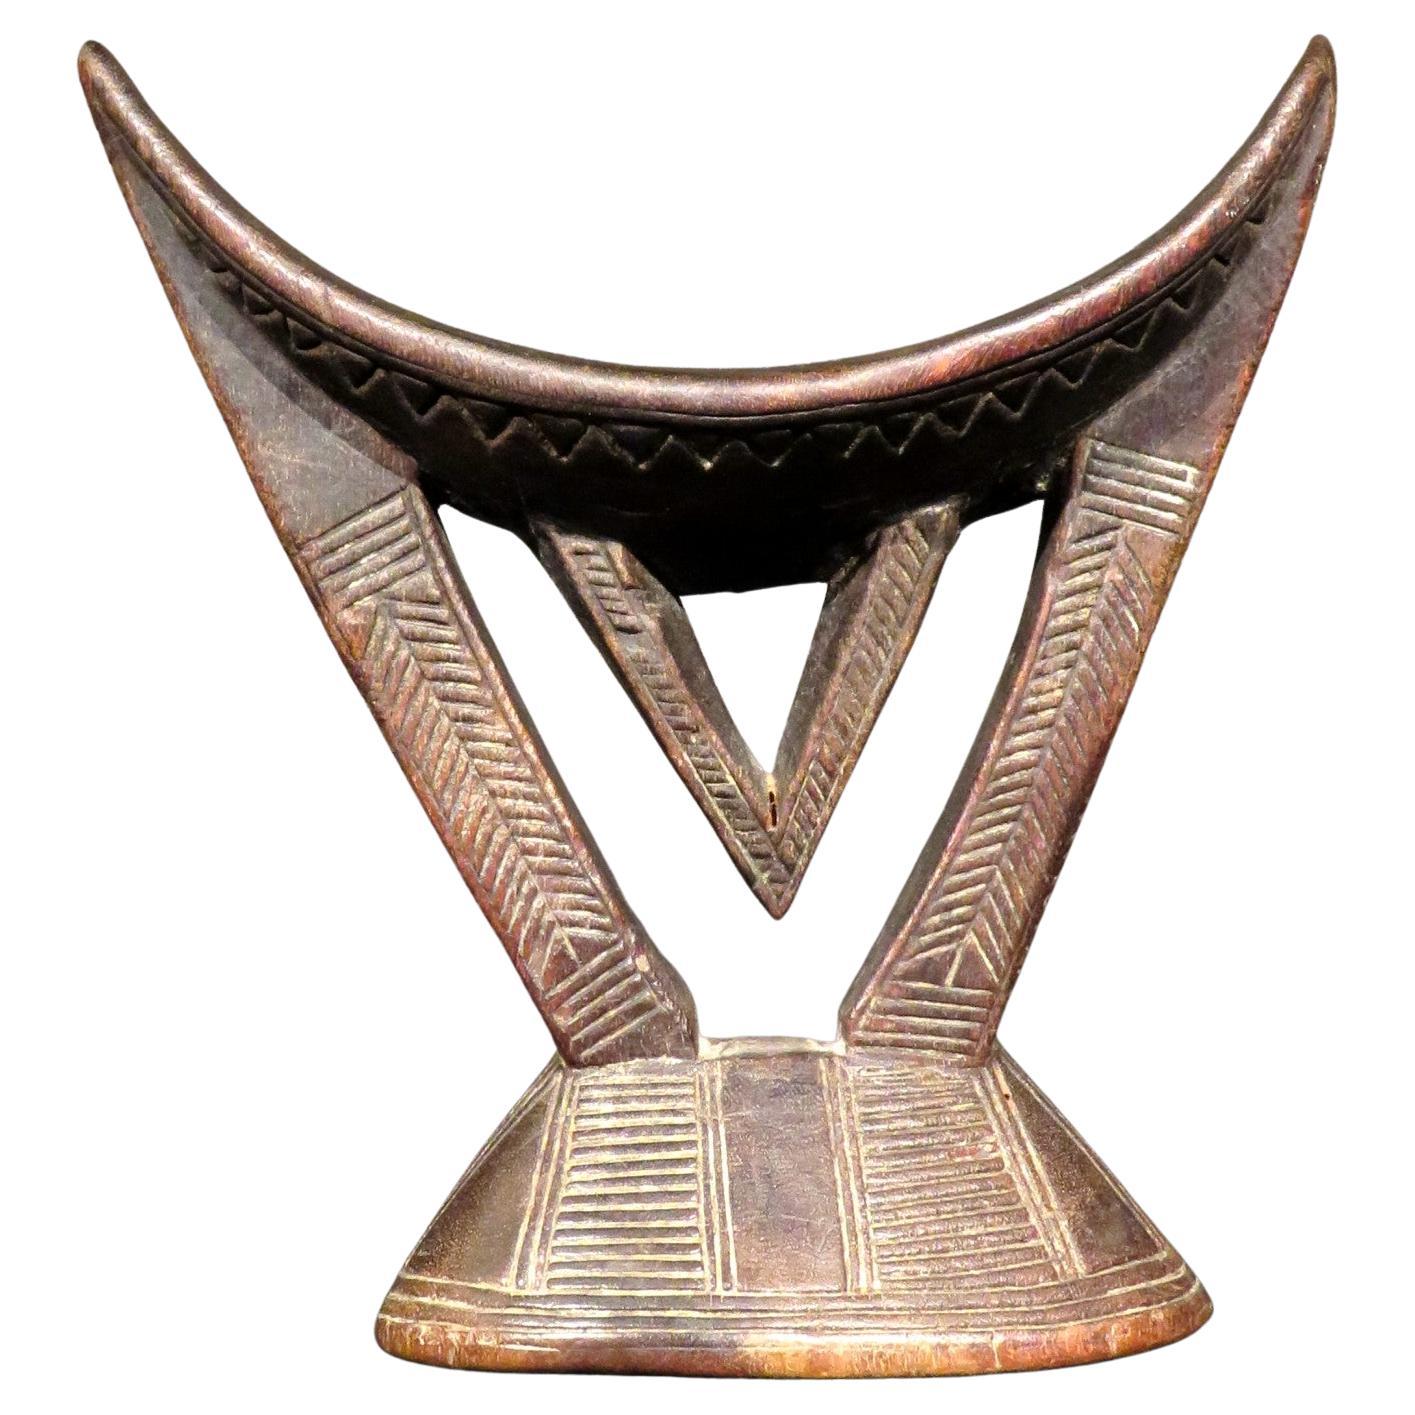 Ostasiatische geschnitzte Kopfstütze des frühen 20. Jahrhunderts, Äthiopien (Kambatta-Volkes)